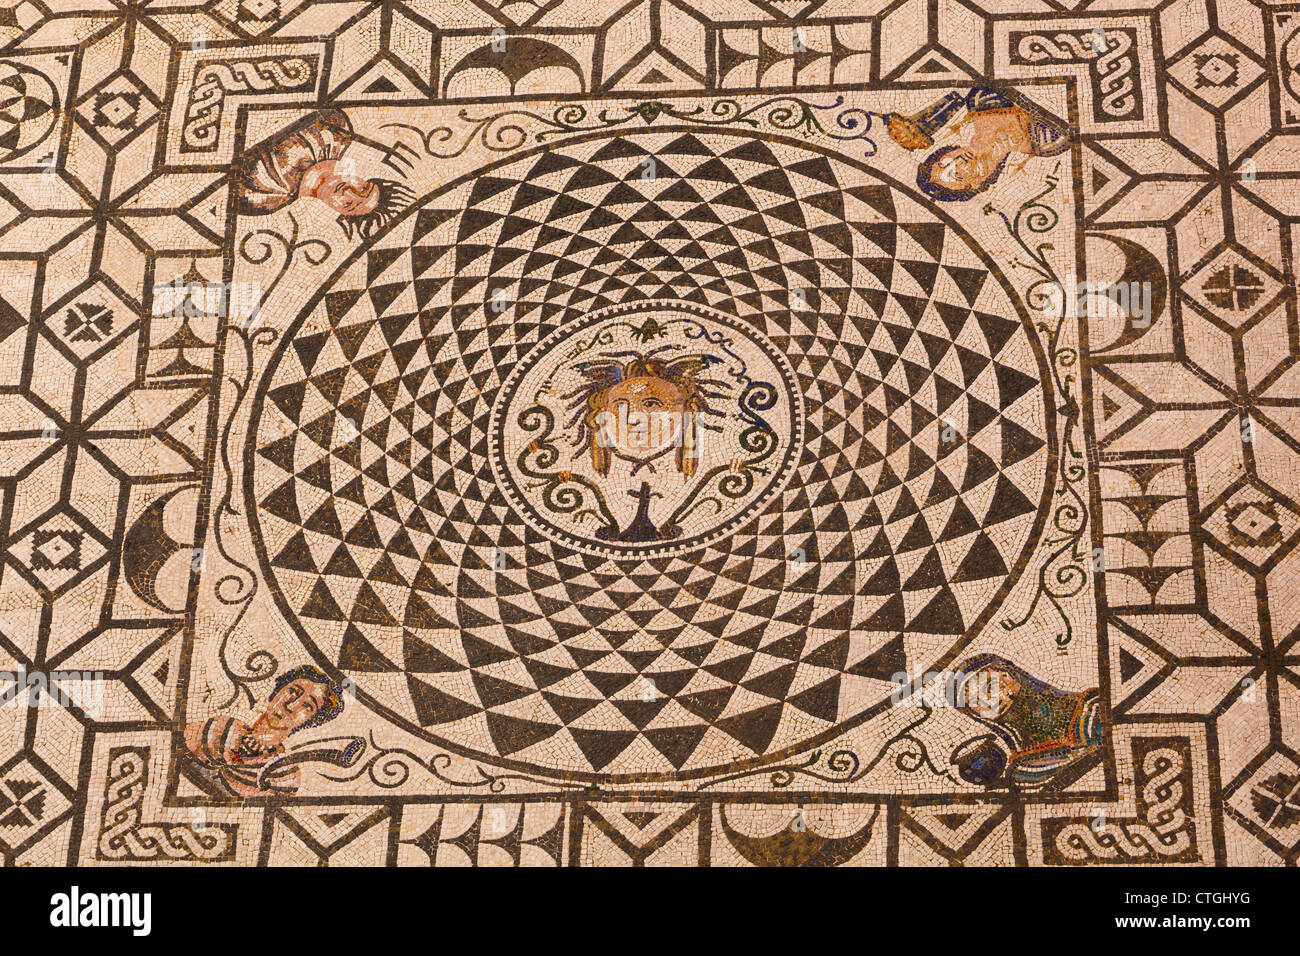 Carmona, Provinz Sevilla, Spanien. Römisches Mosaik von Medusa im Rathaus. Stockfoto